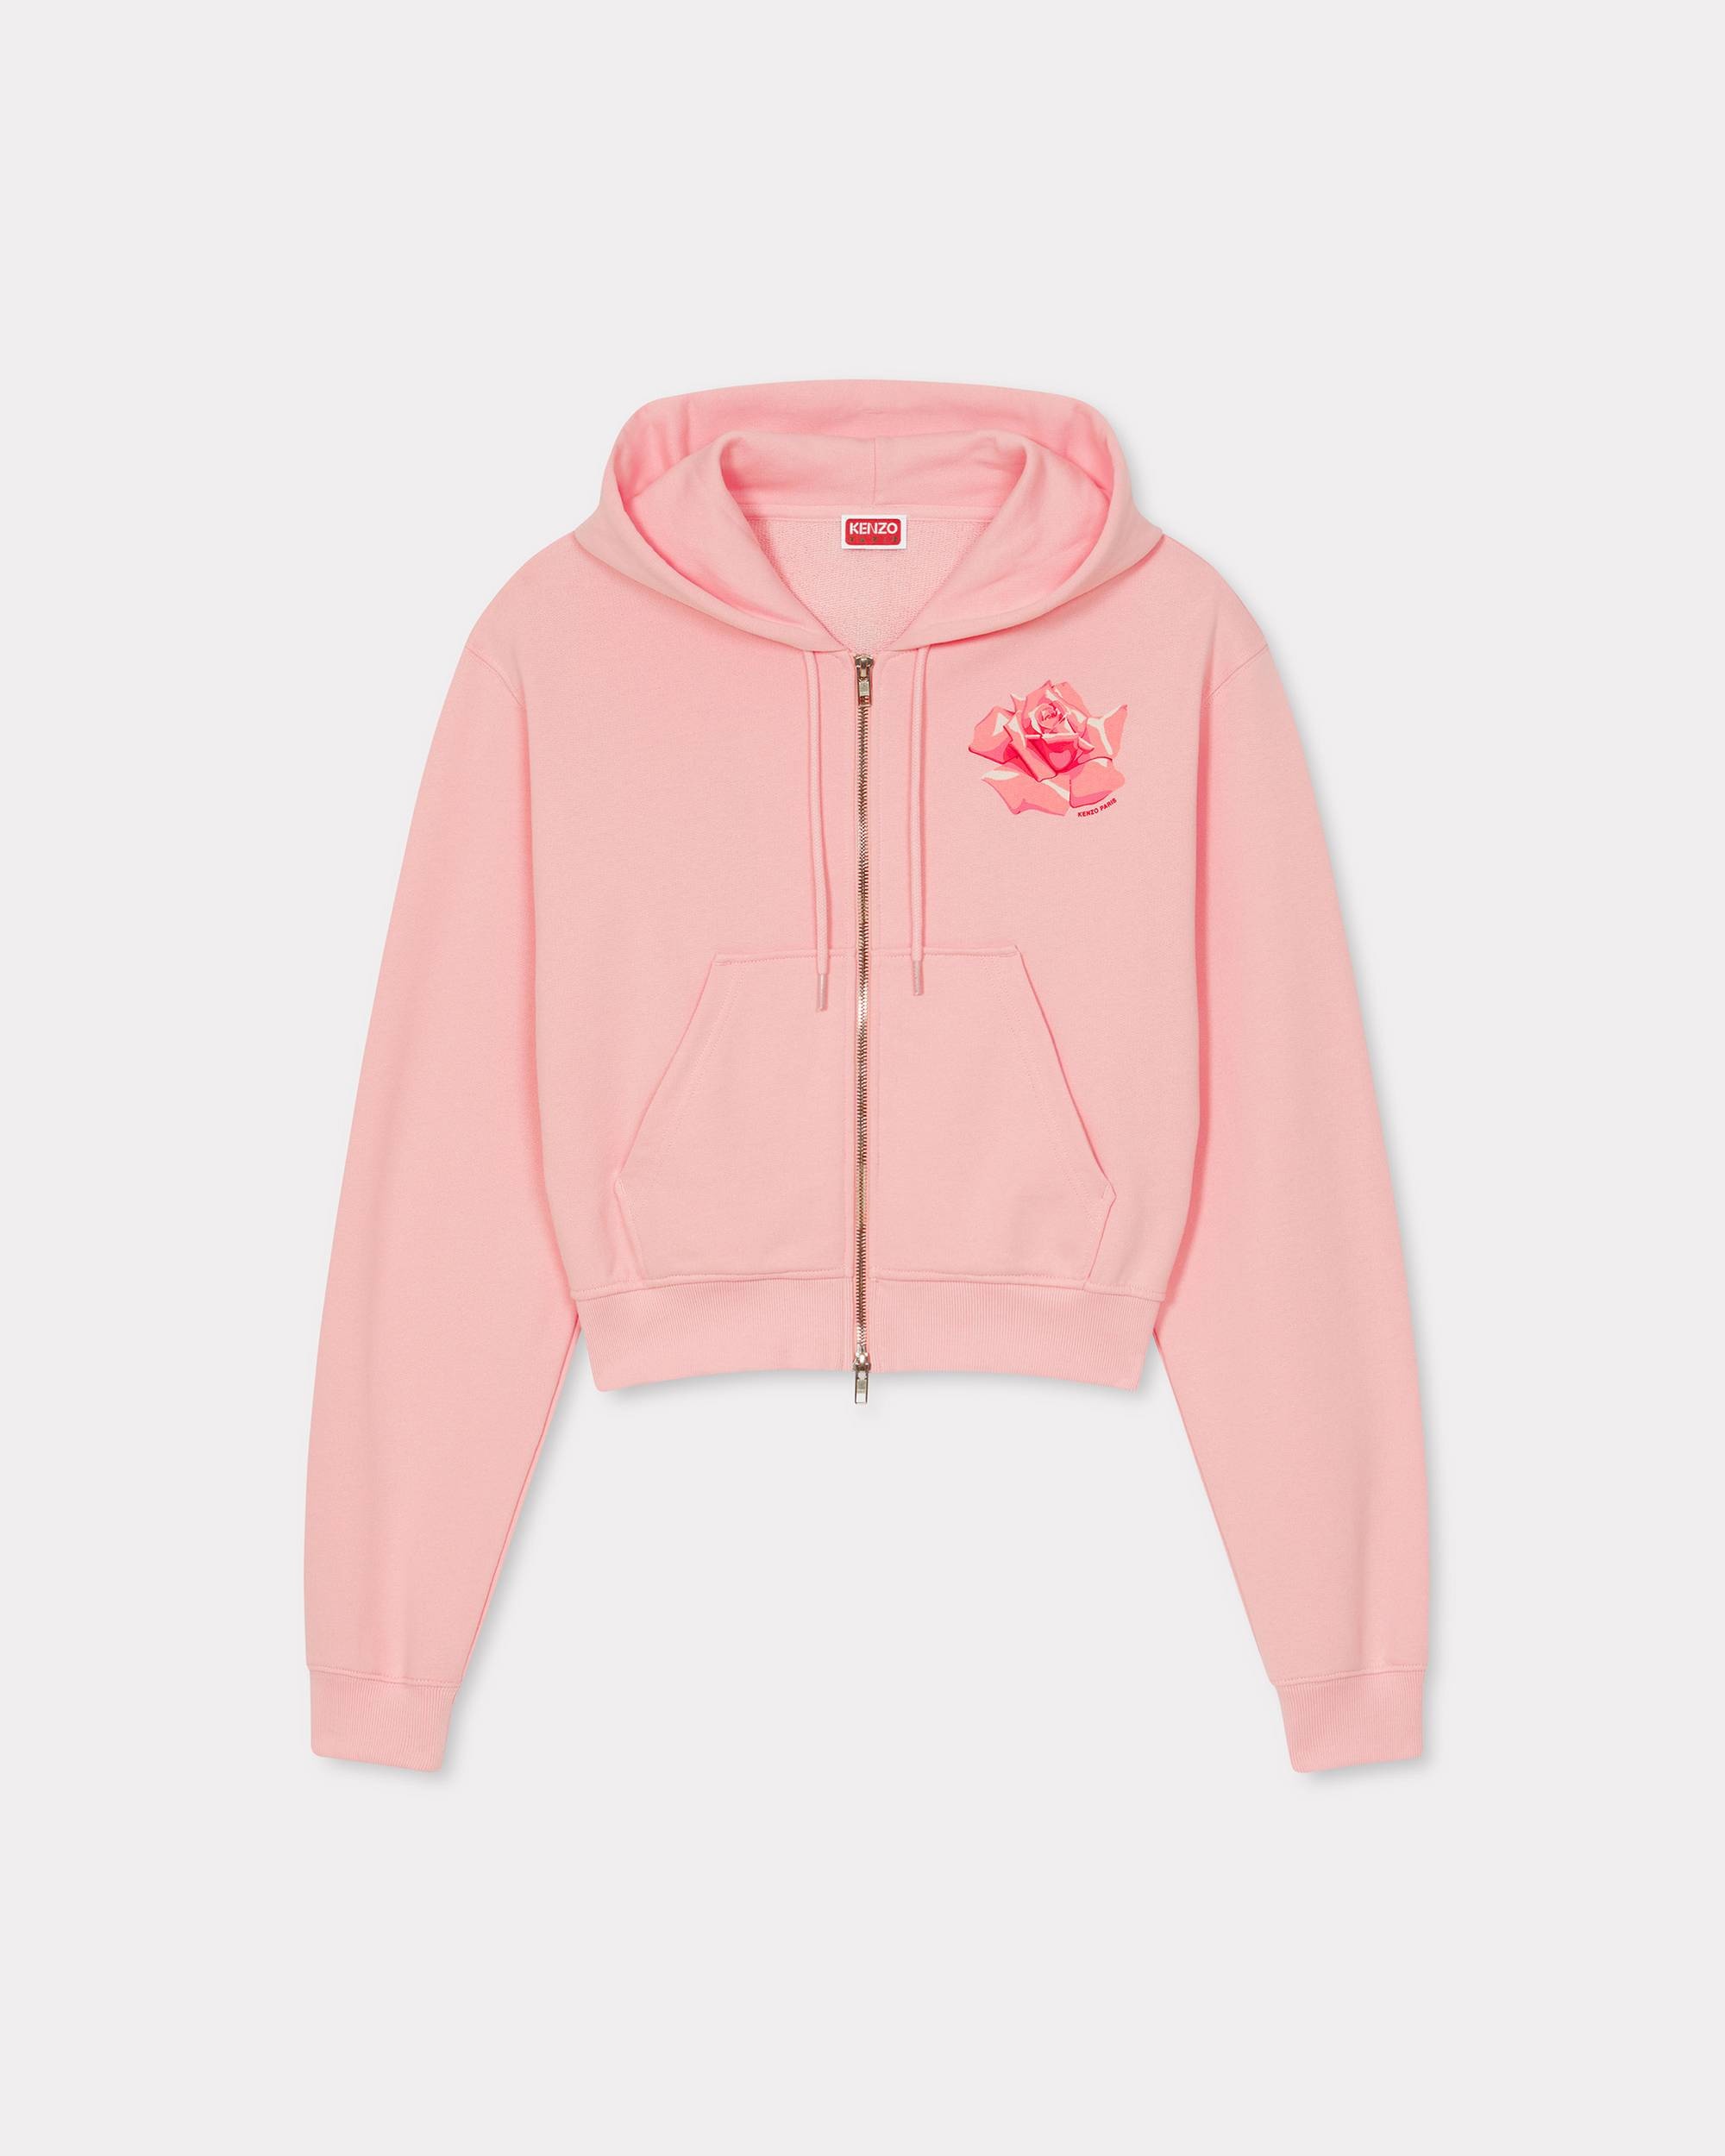 'KENZO Rose' zip up hoodie - 1